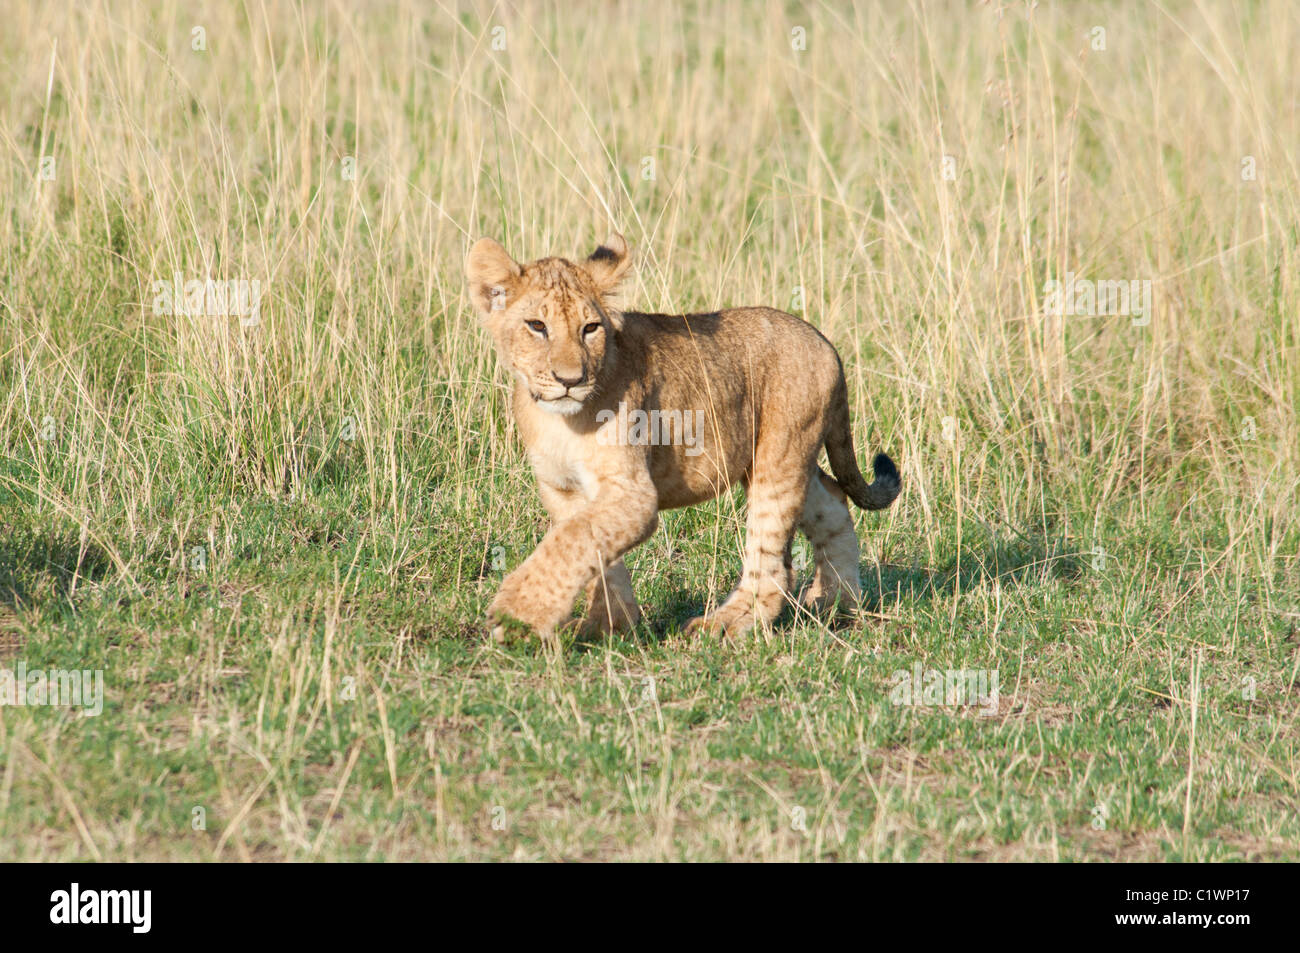 Cachorro de león, Panthera leo, Reserva Nacional de Masai Mara, Kenya, Africa. Foto de stock